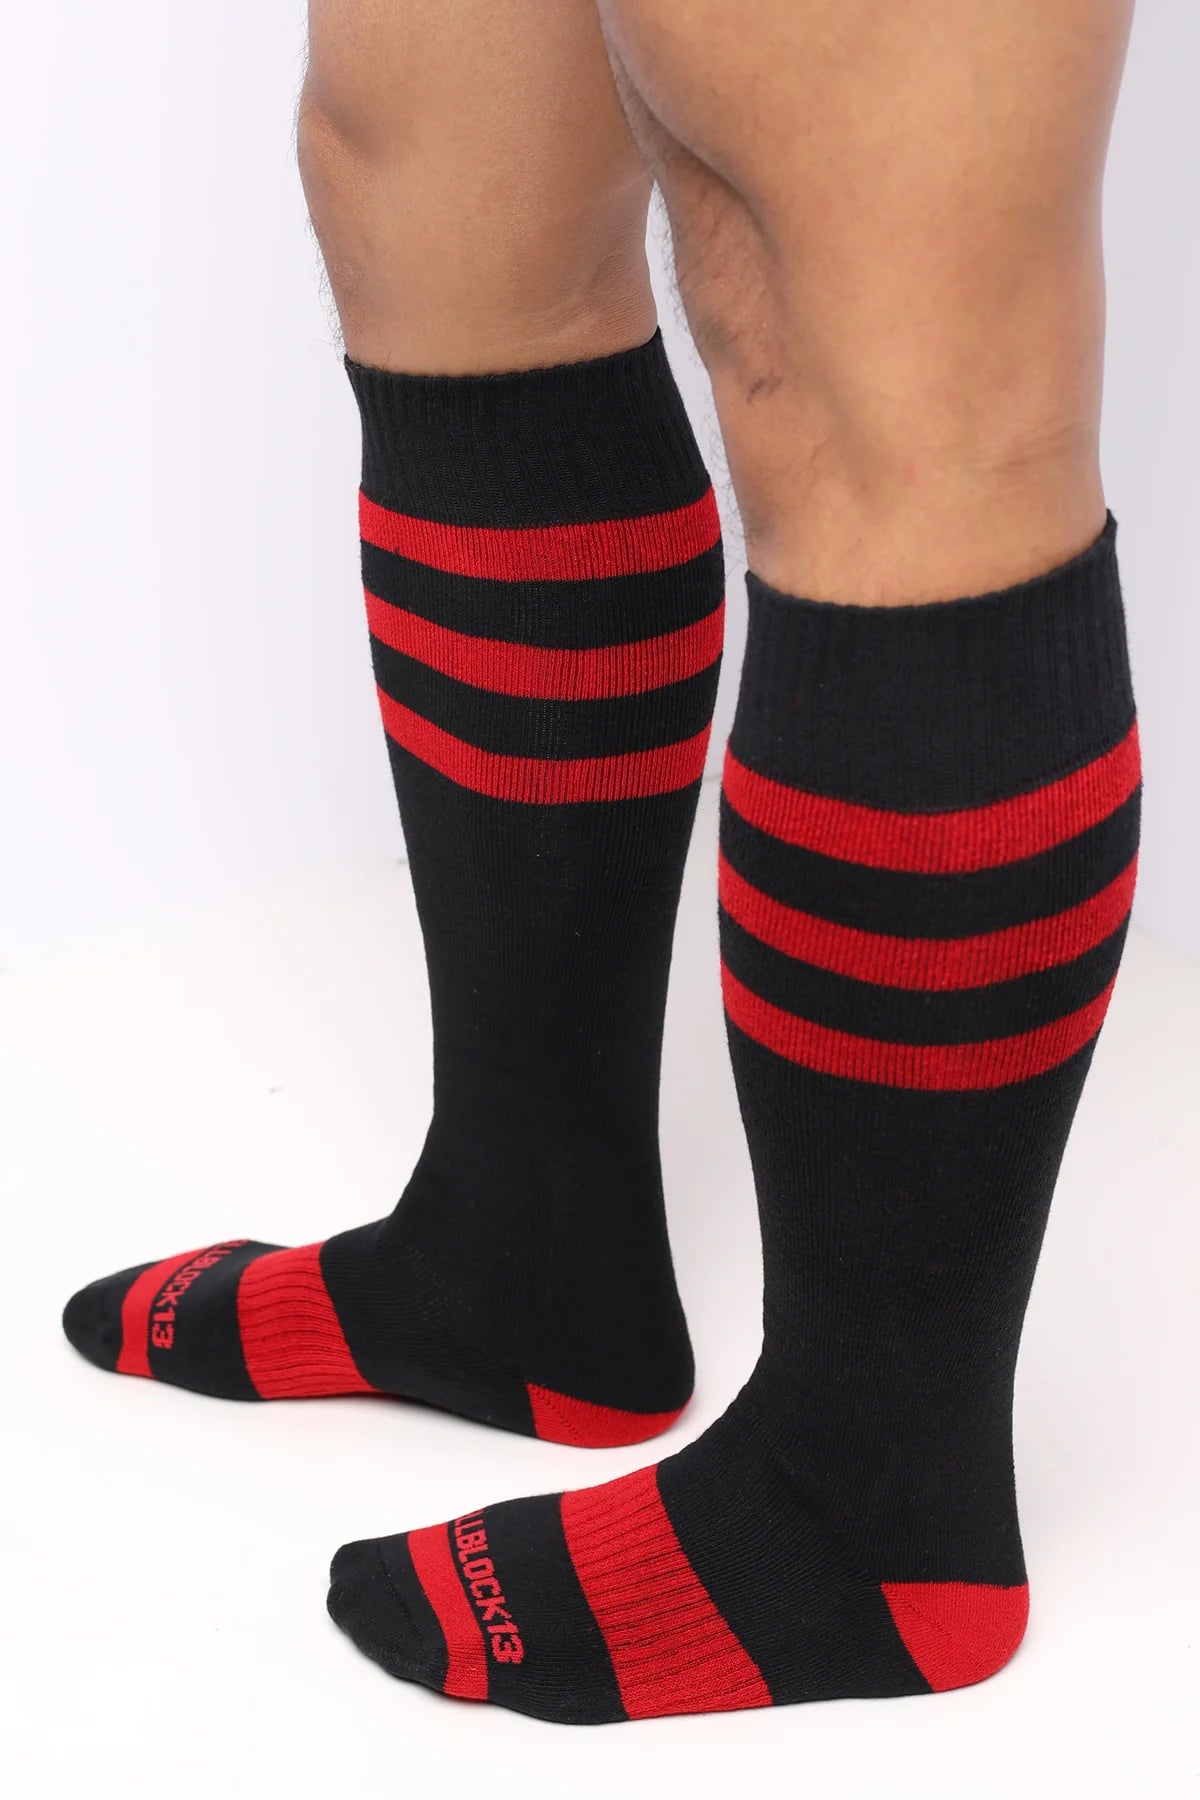 Cellblock 13 Linebacker knee-high socks black/red